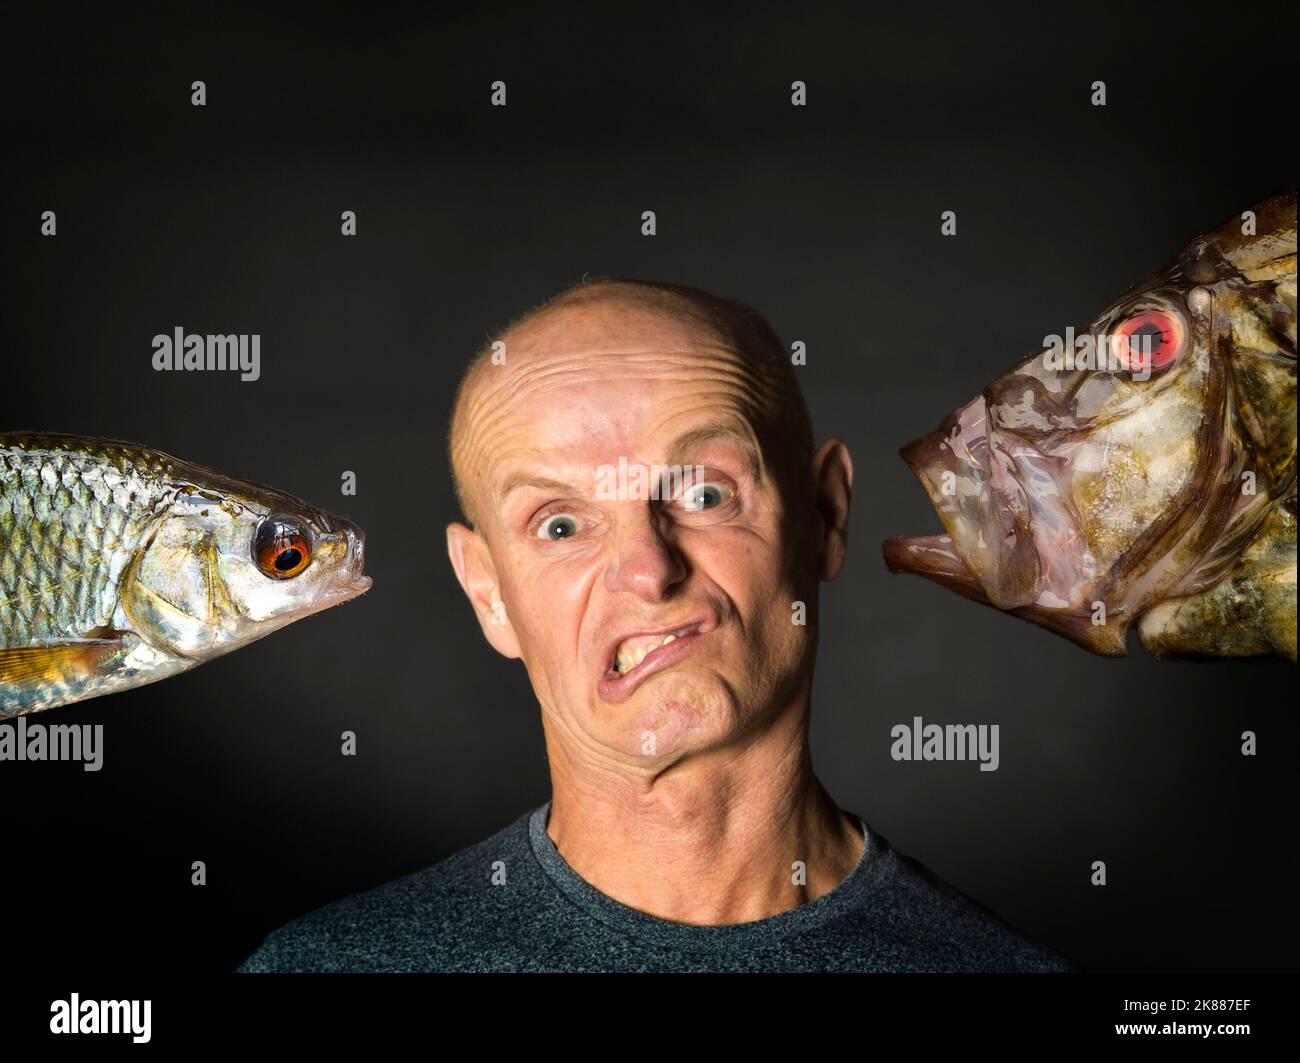 Fish Face, ein freakisches Porträt eines Mannes und eines Fisches Stockfoto